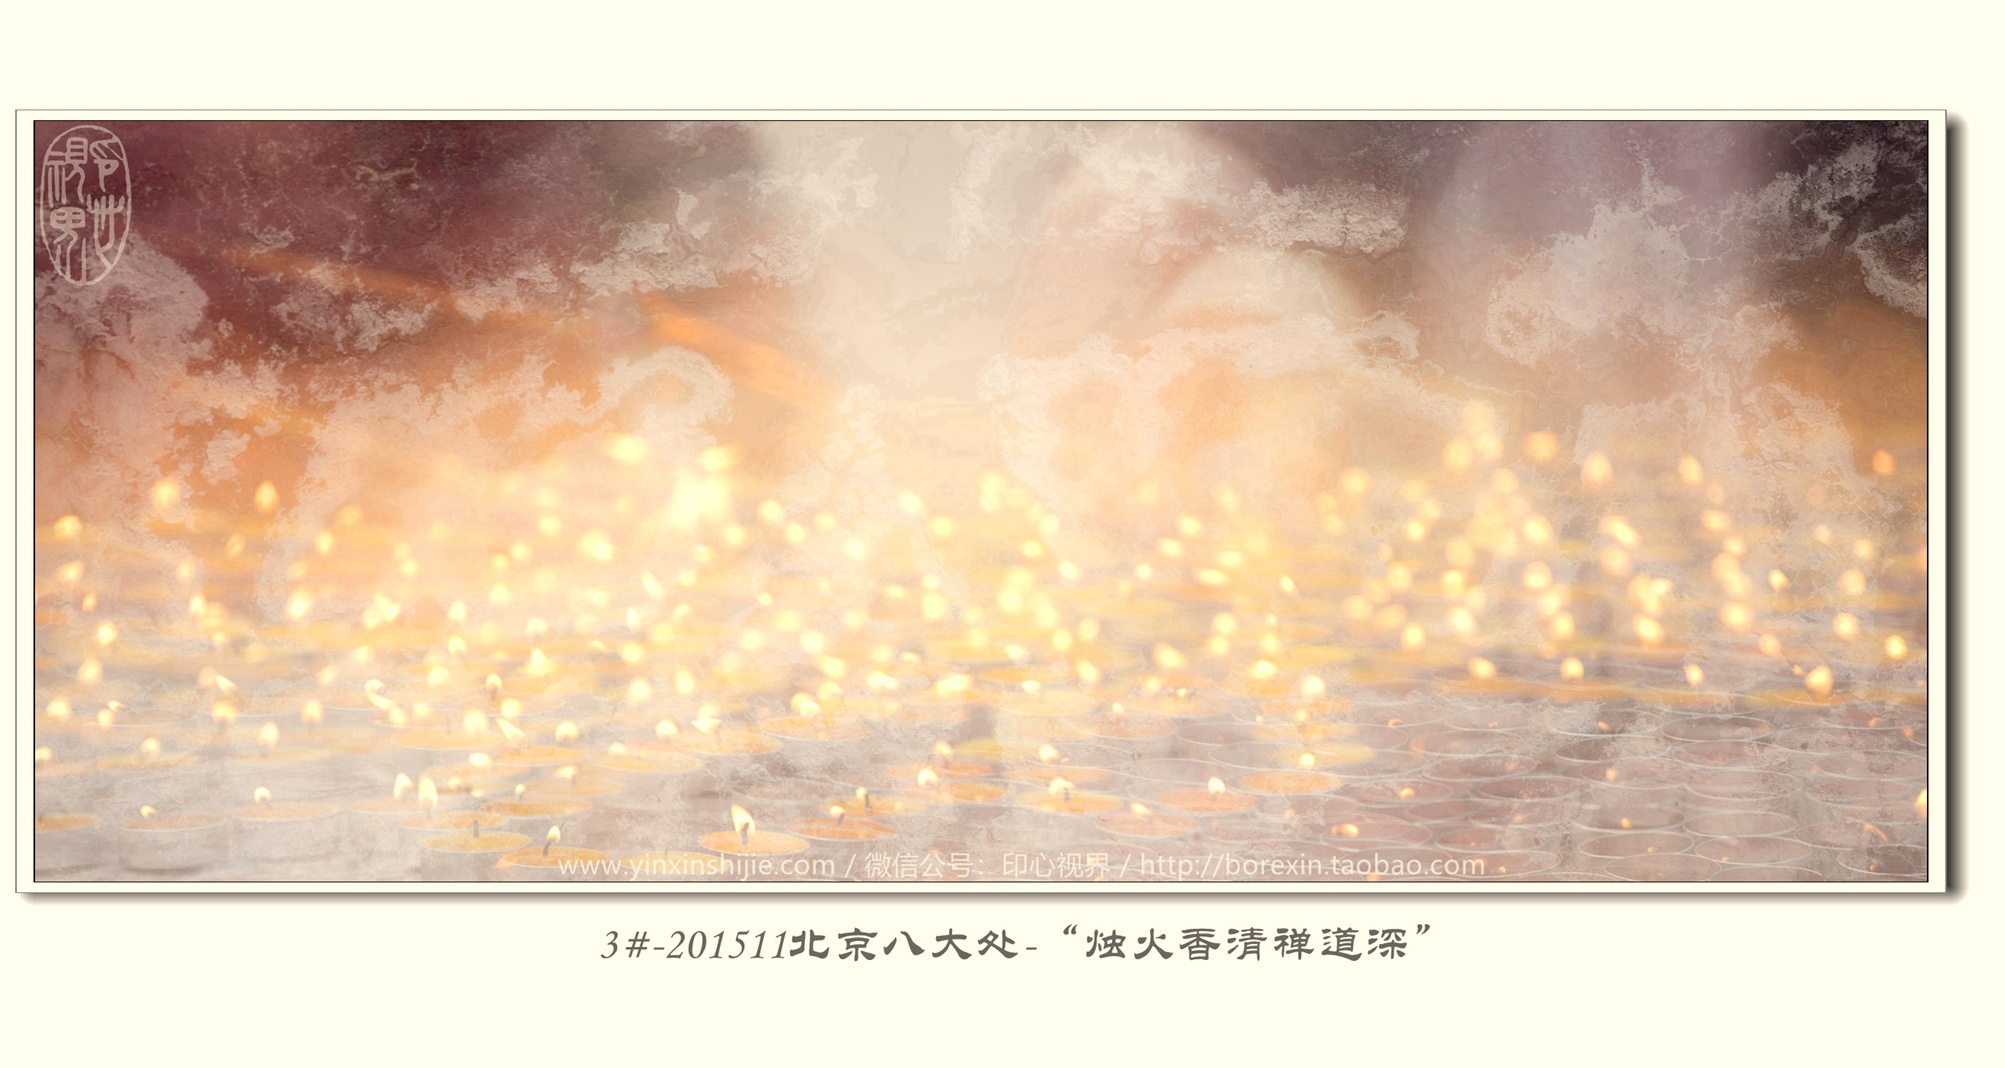 3#-201511北京八大处-“烛火